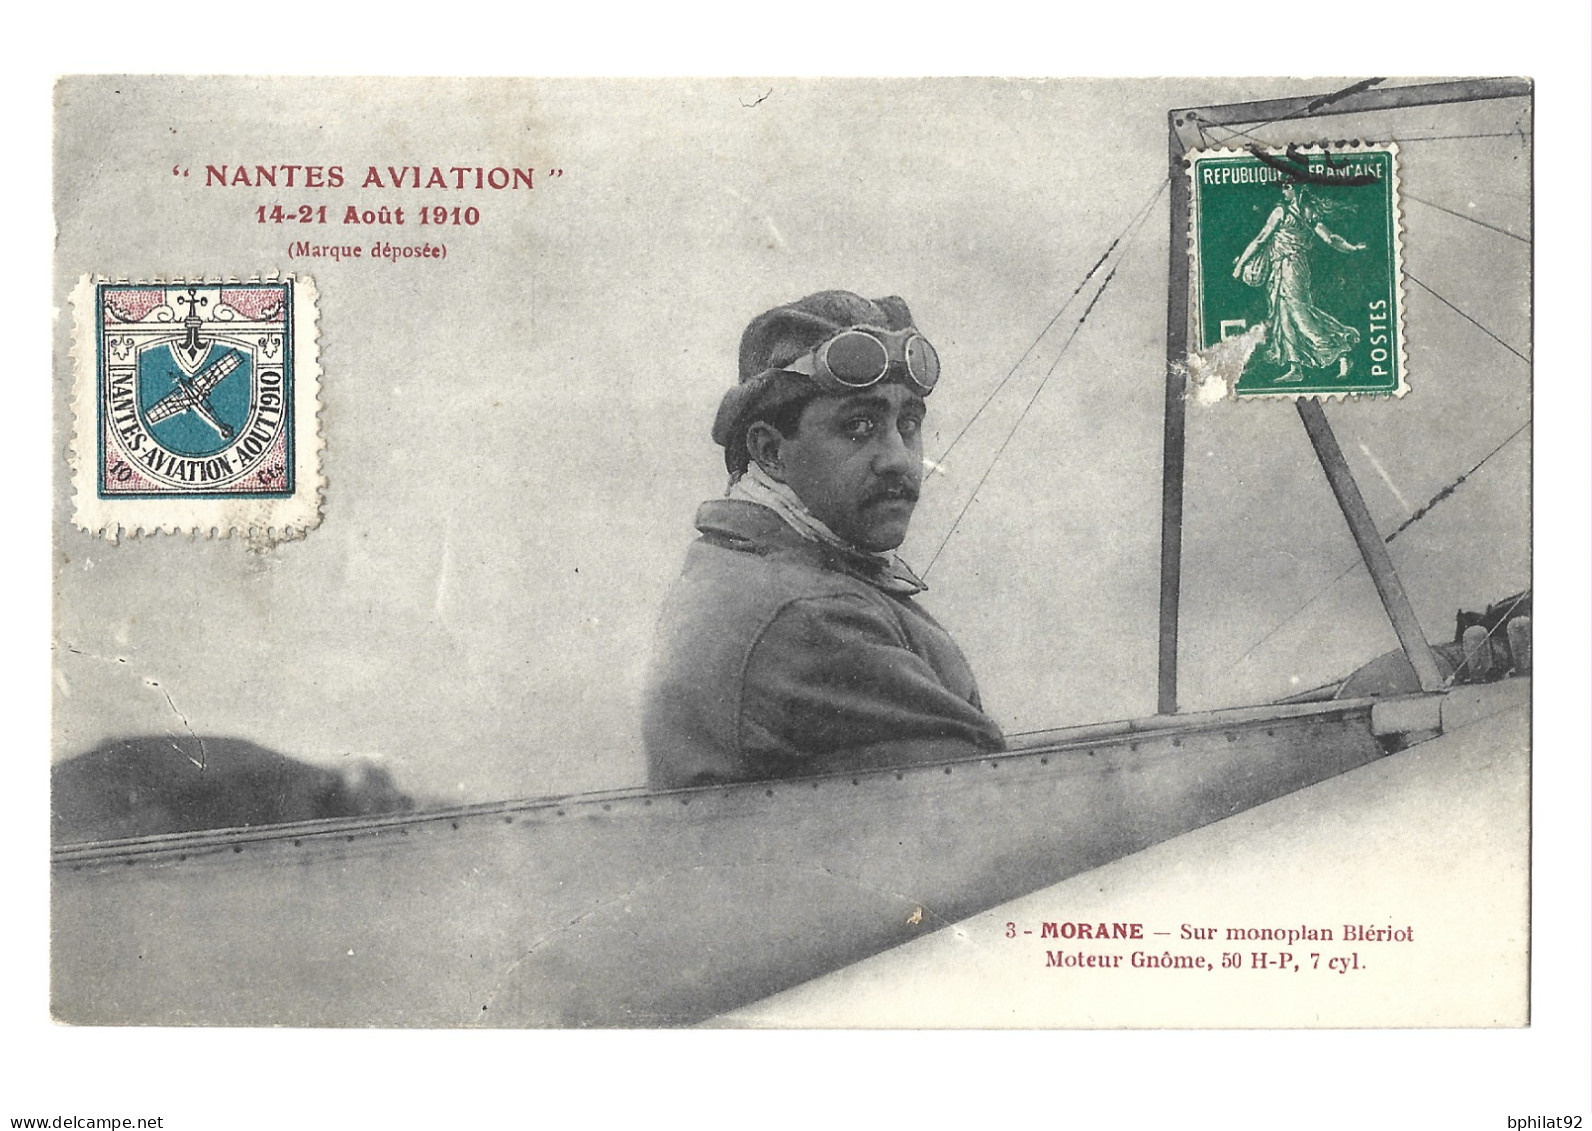 !!! CARTE POSTALE AVEC VIGNETTE DES FÊTES D'AVIATION DE NANTES, AOÛT 1910, PETITS DÉFAUTS - Aviation